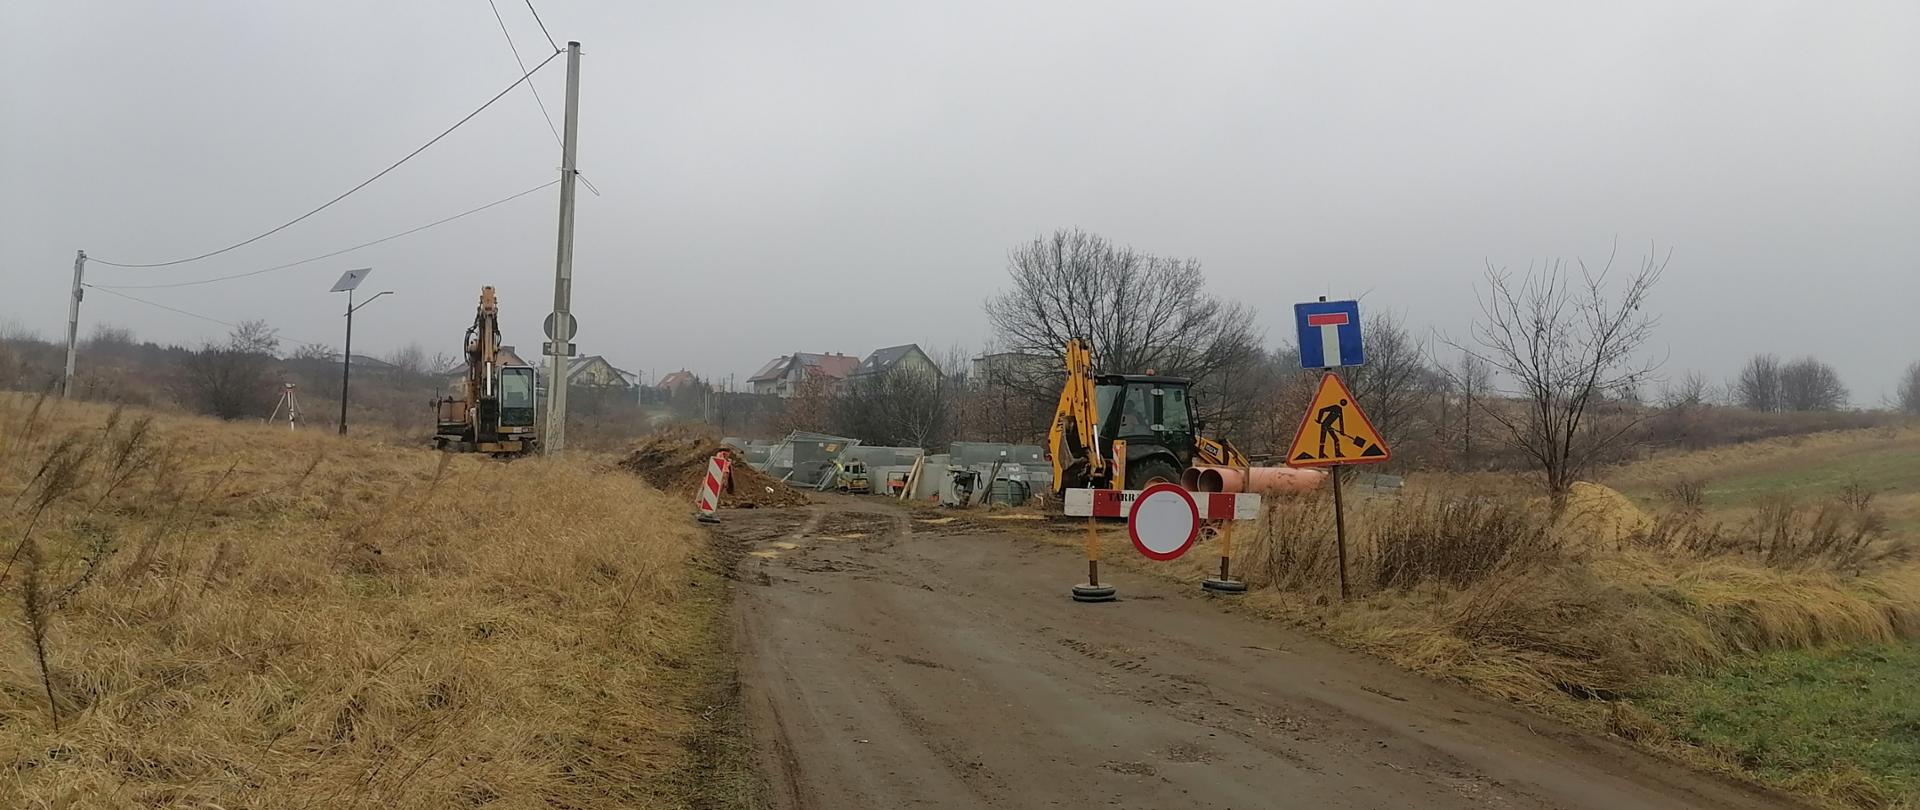 Budowa tranzytu kanalizacji - postępy prac w drugiej połowie stycznia 2022 r.